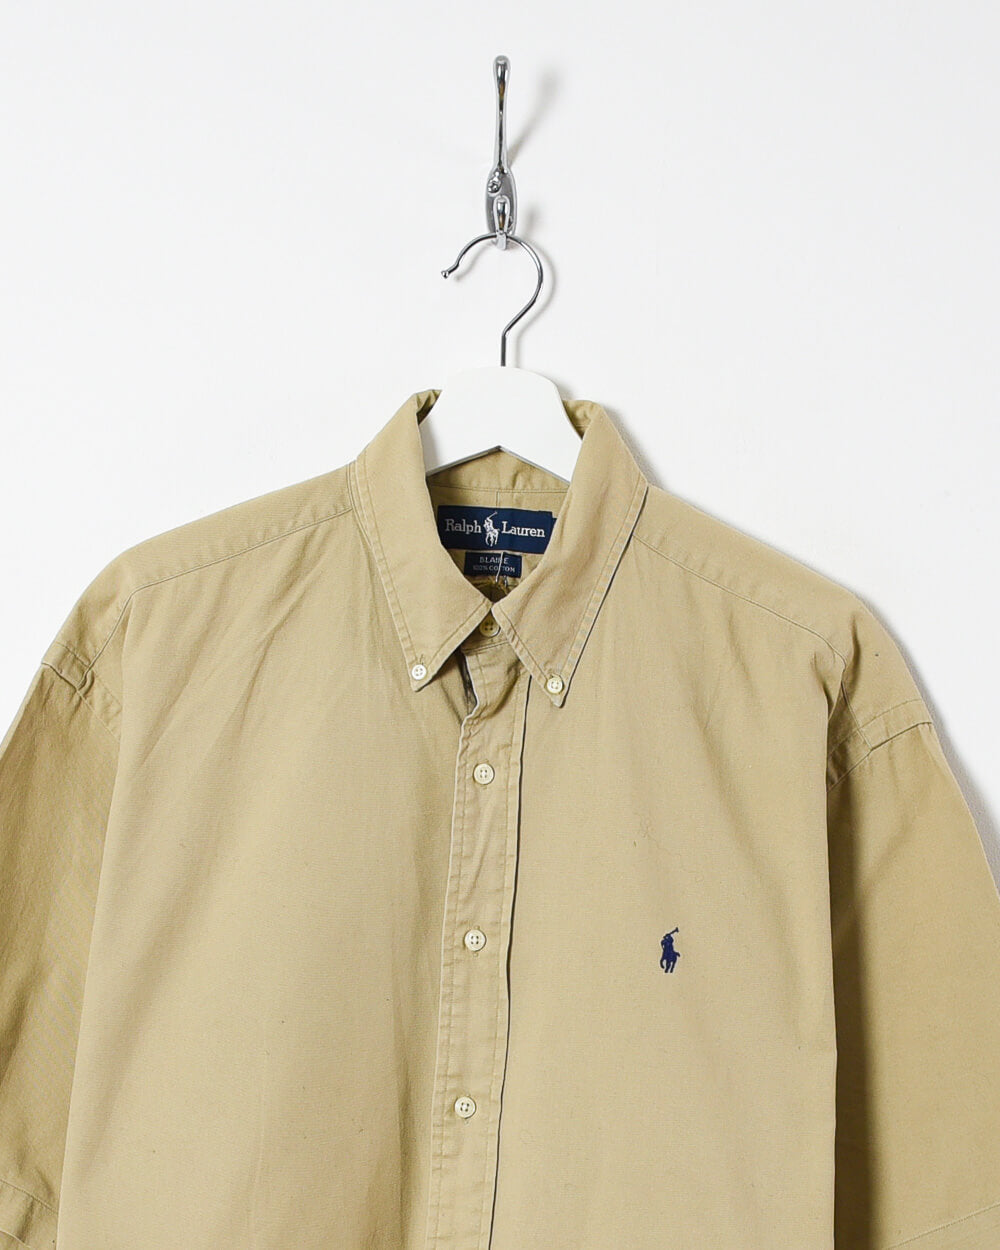 Neutral Ralph Lauren Short-Sleeved Shirt - Large